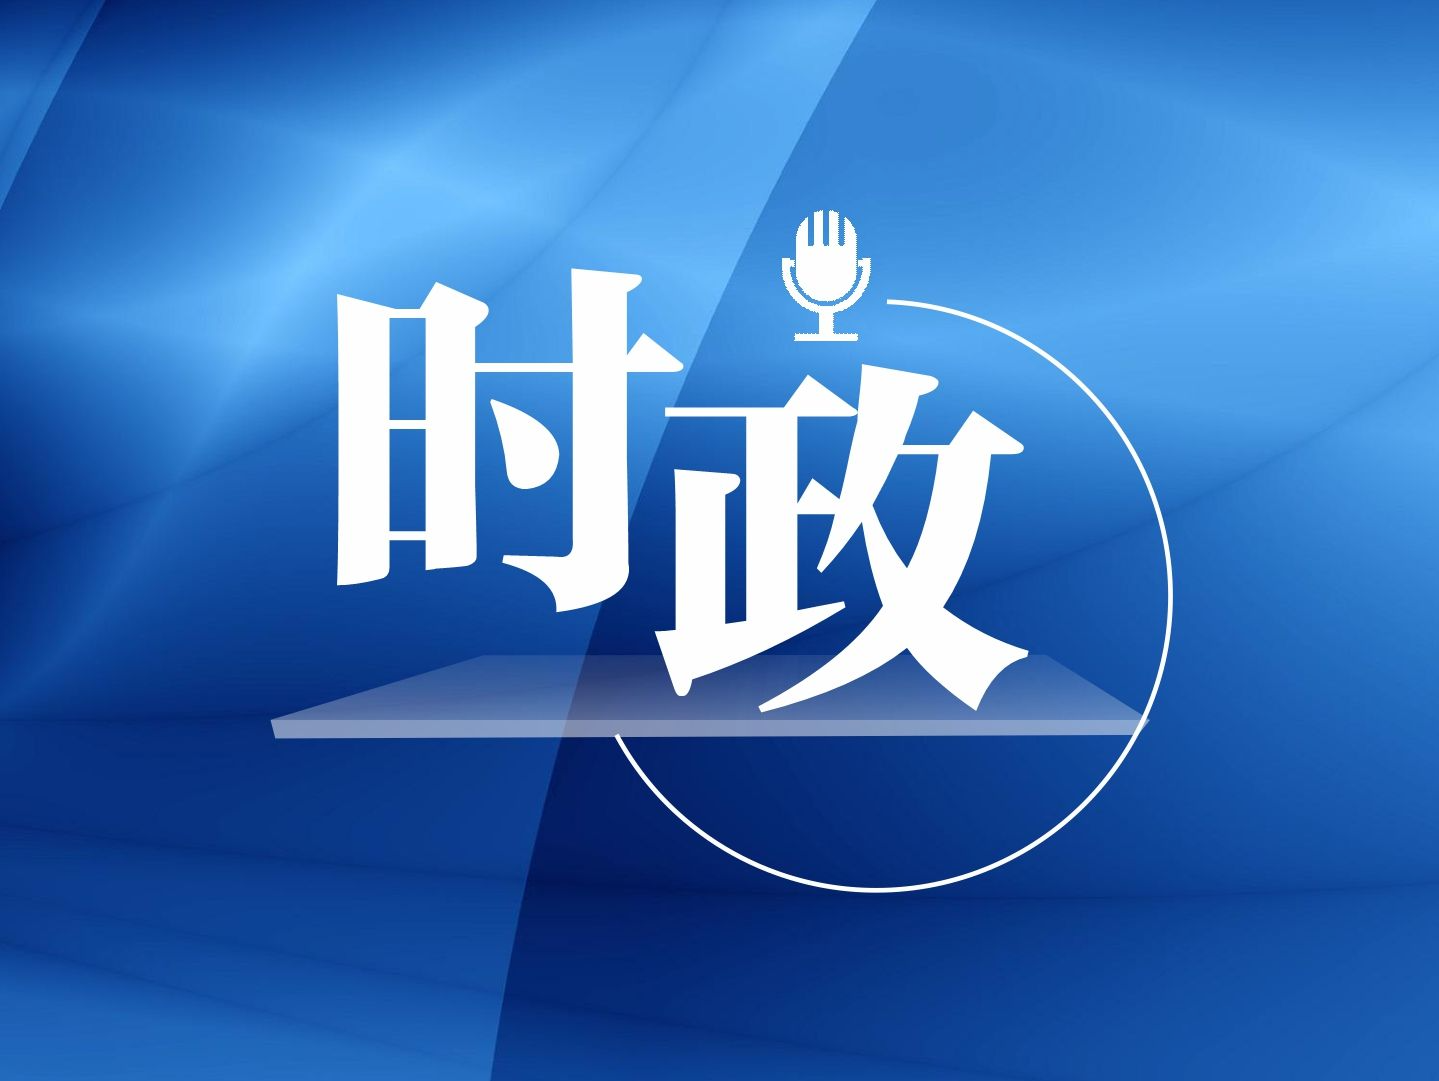 江苏选举产生第十四届全国人大代表 习近平全票当选